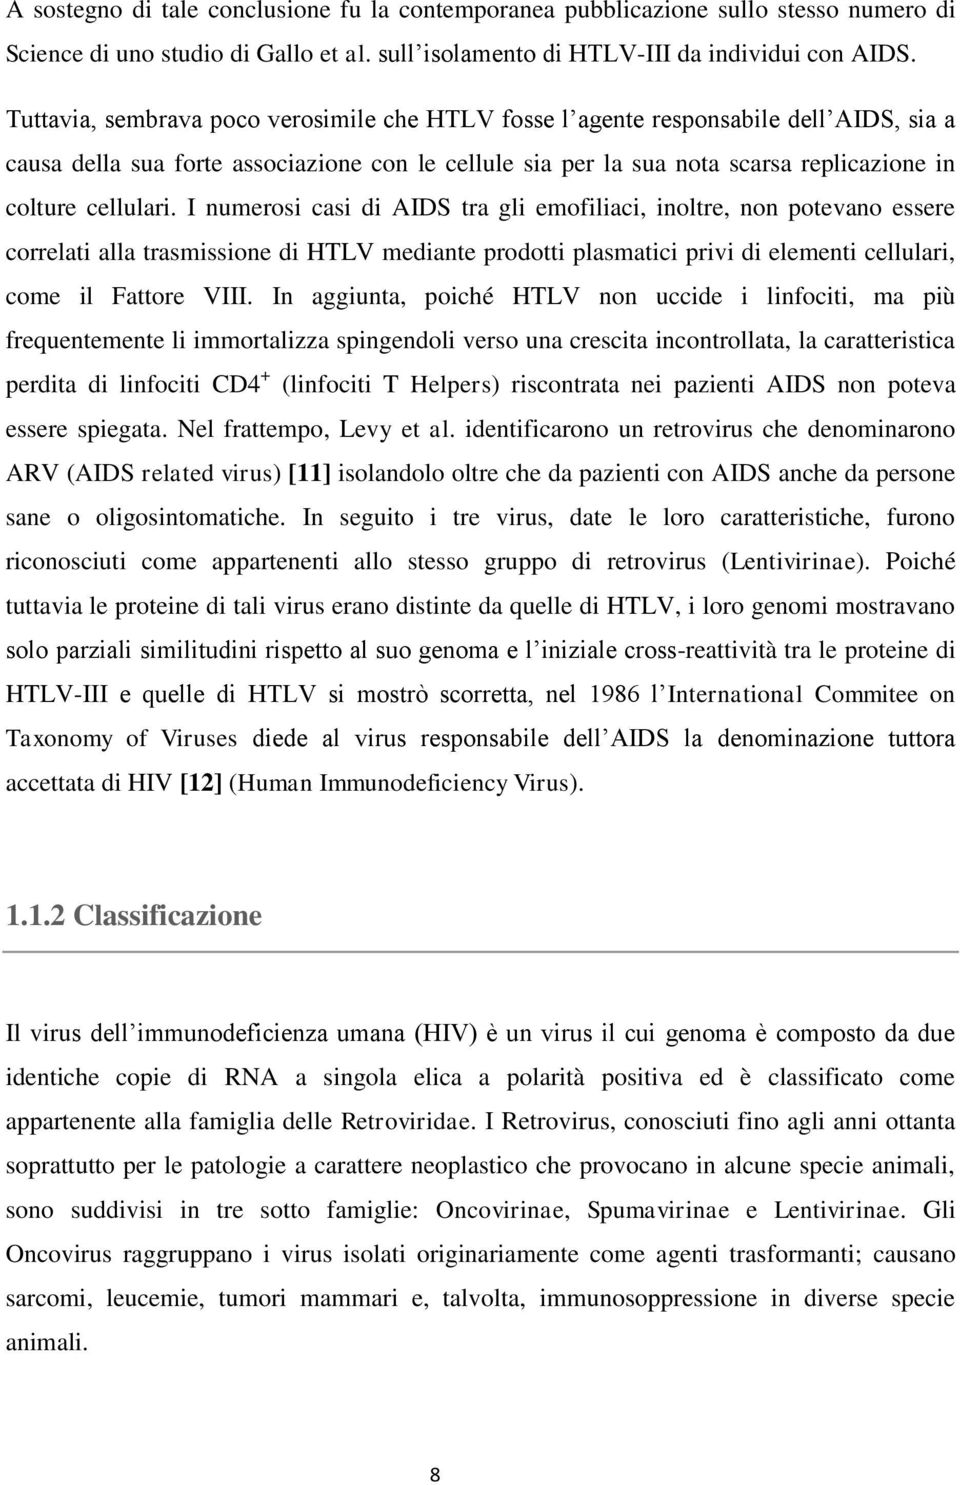 I numerosi casi di AIDS tra gli emofiliaci, inoltre, non potevano essere correlati alla trasmissione di HTLV mediante prodotti plasmatici privi di elementi cellulari, come il Fattore VIII.